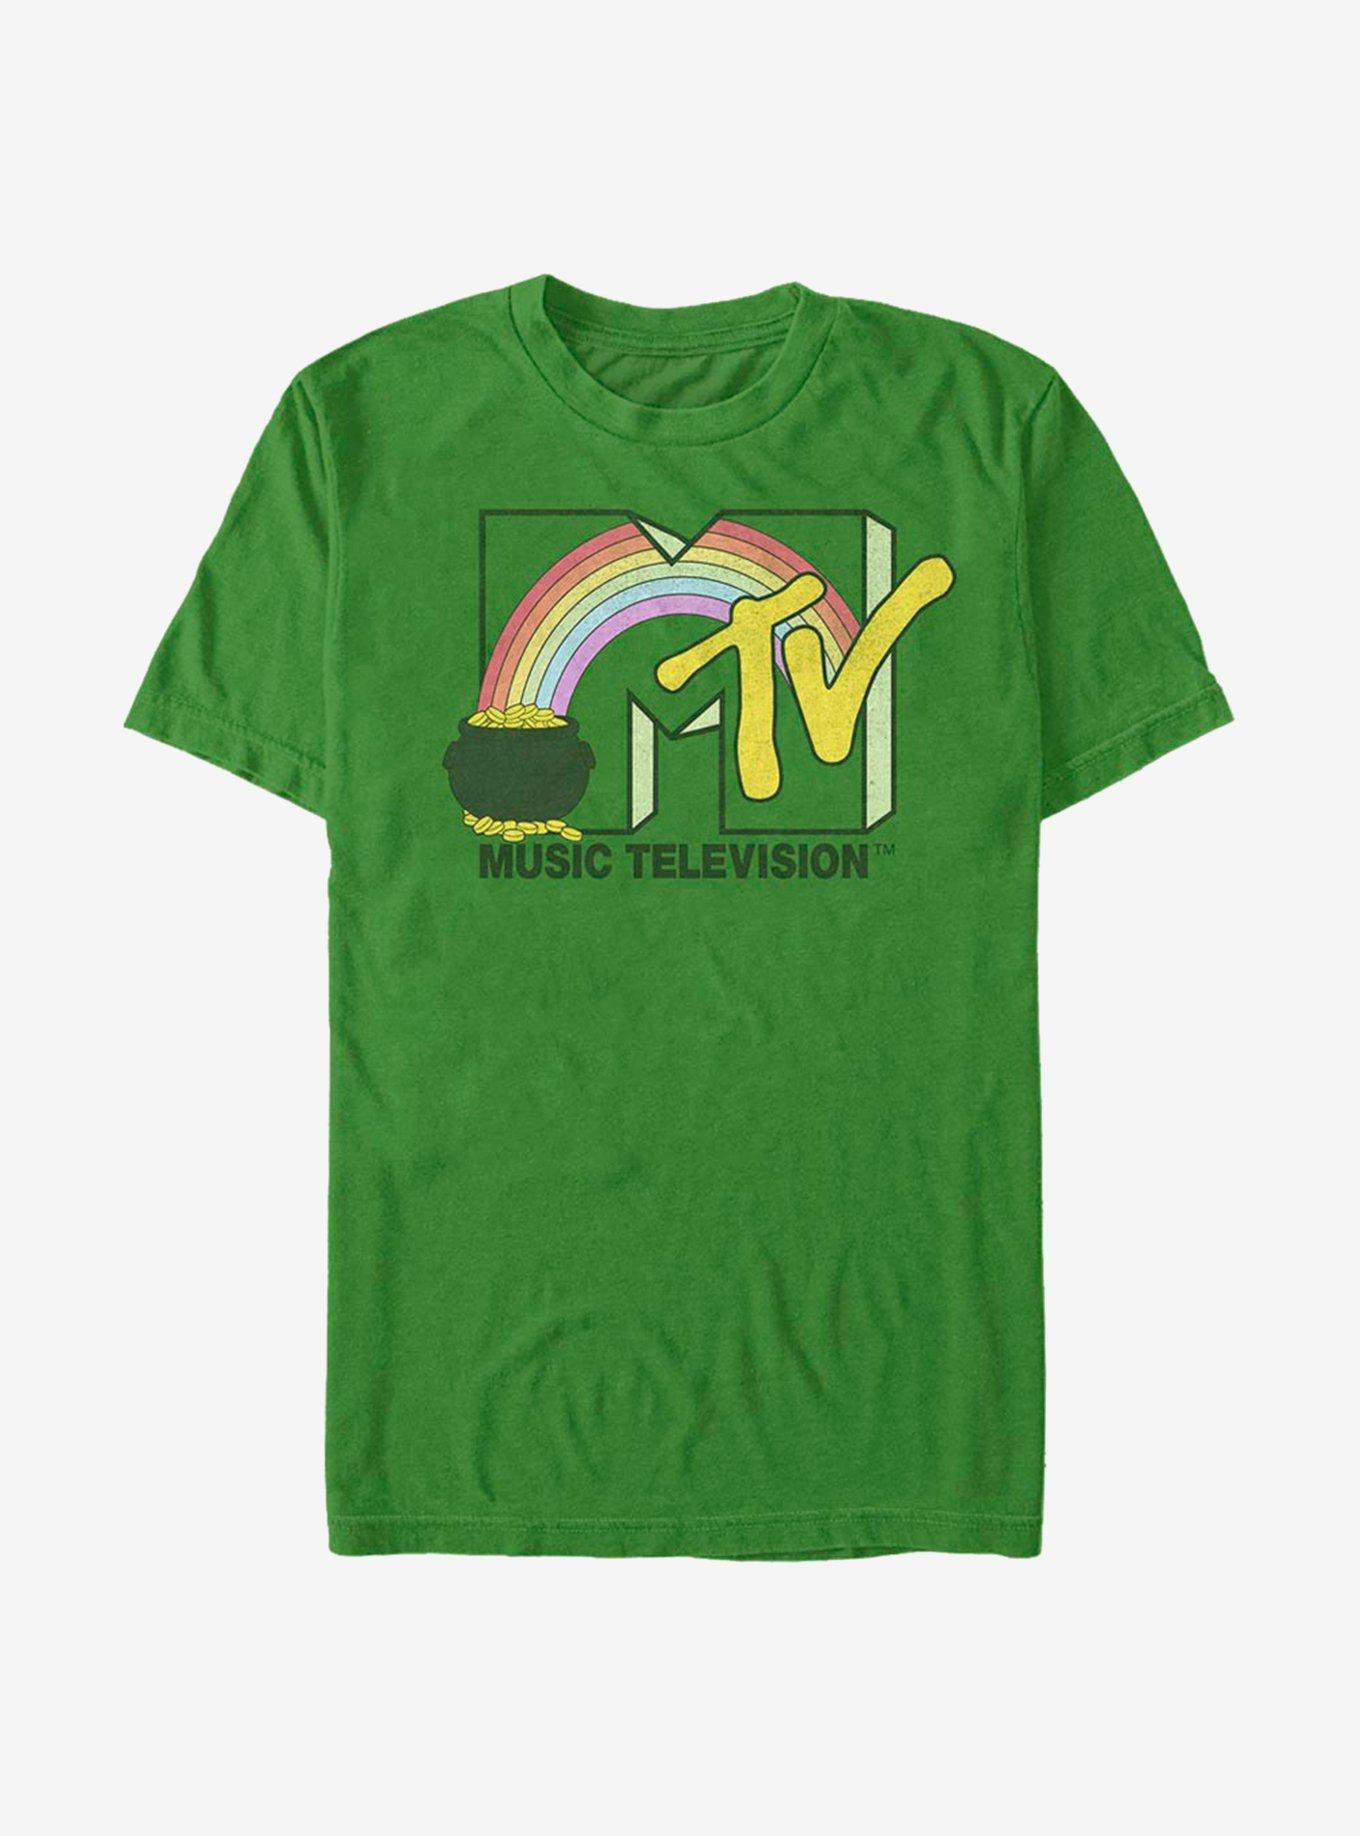 MTV Pot Of T.V. T-Shirt